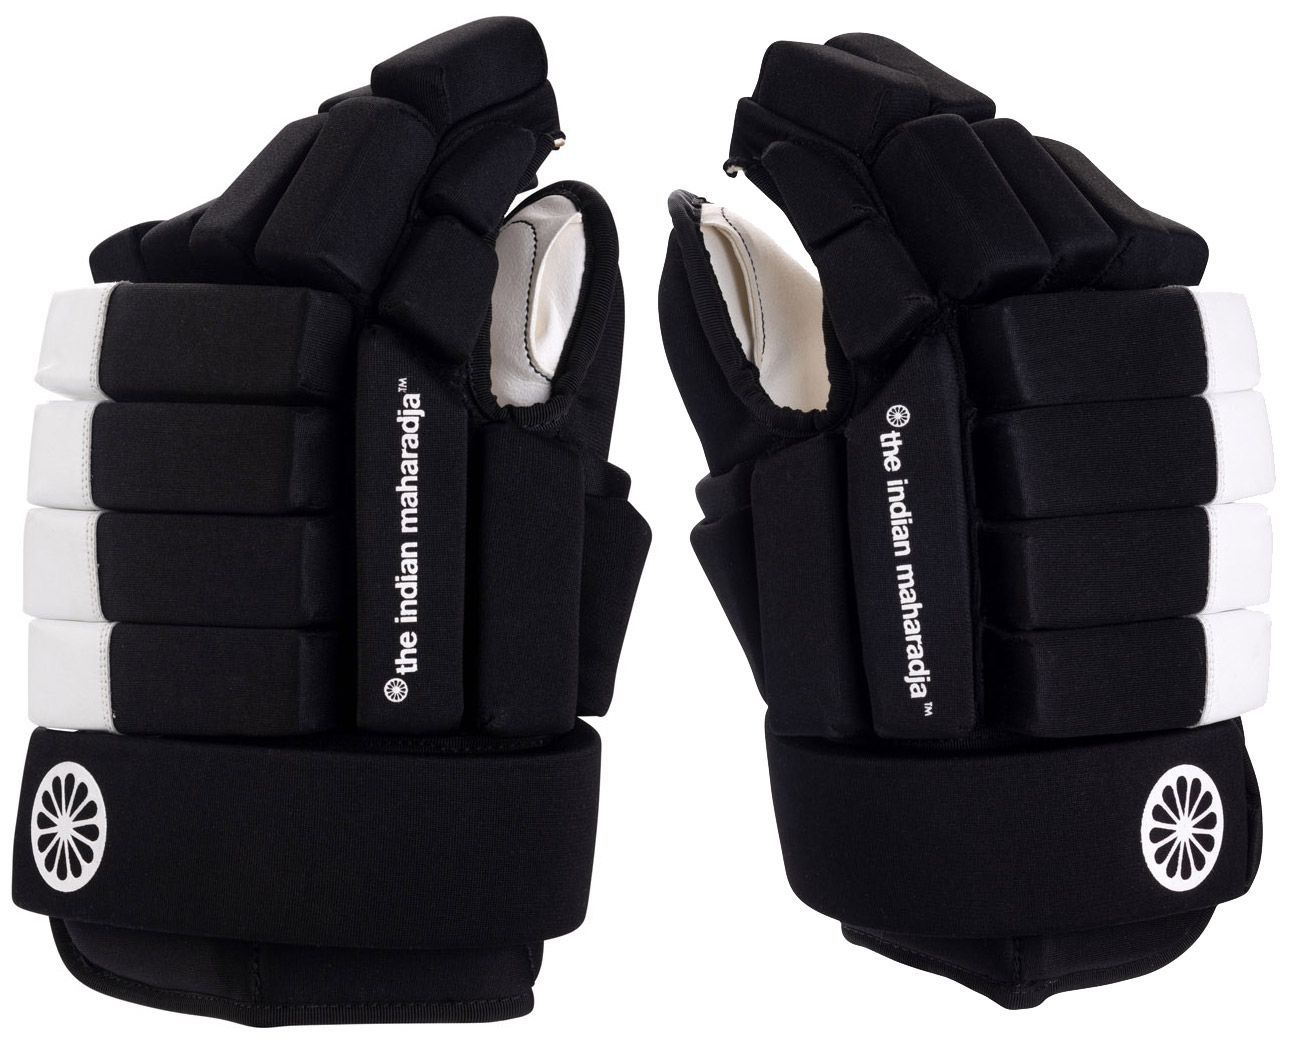 Durf maak een foto steno Handschoenen - Online kopen - Hockeyhuis